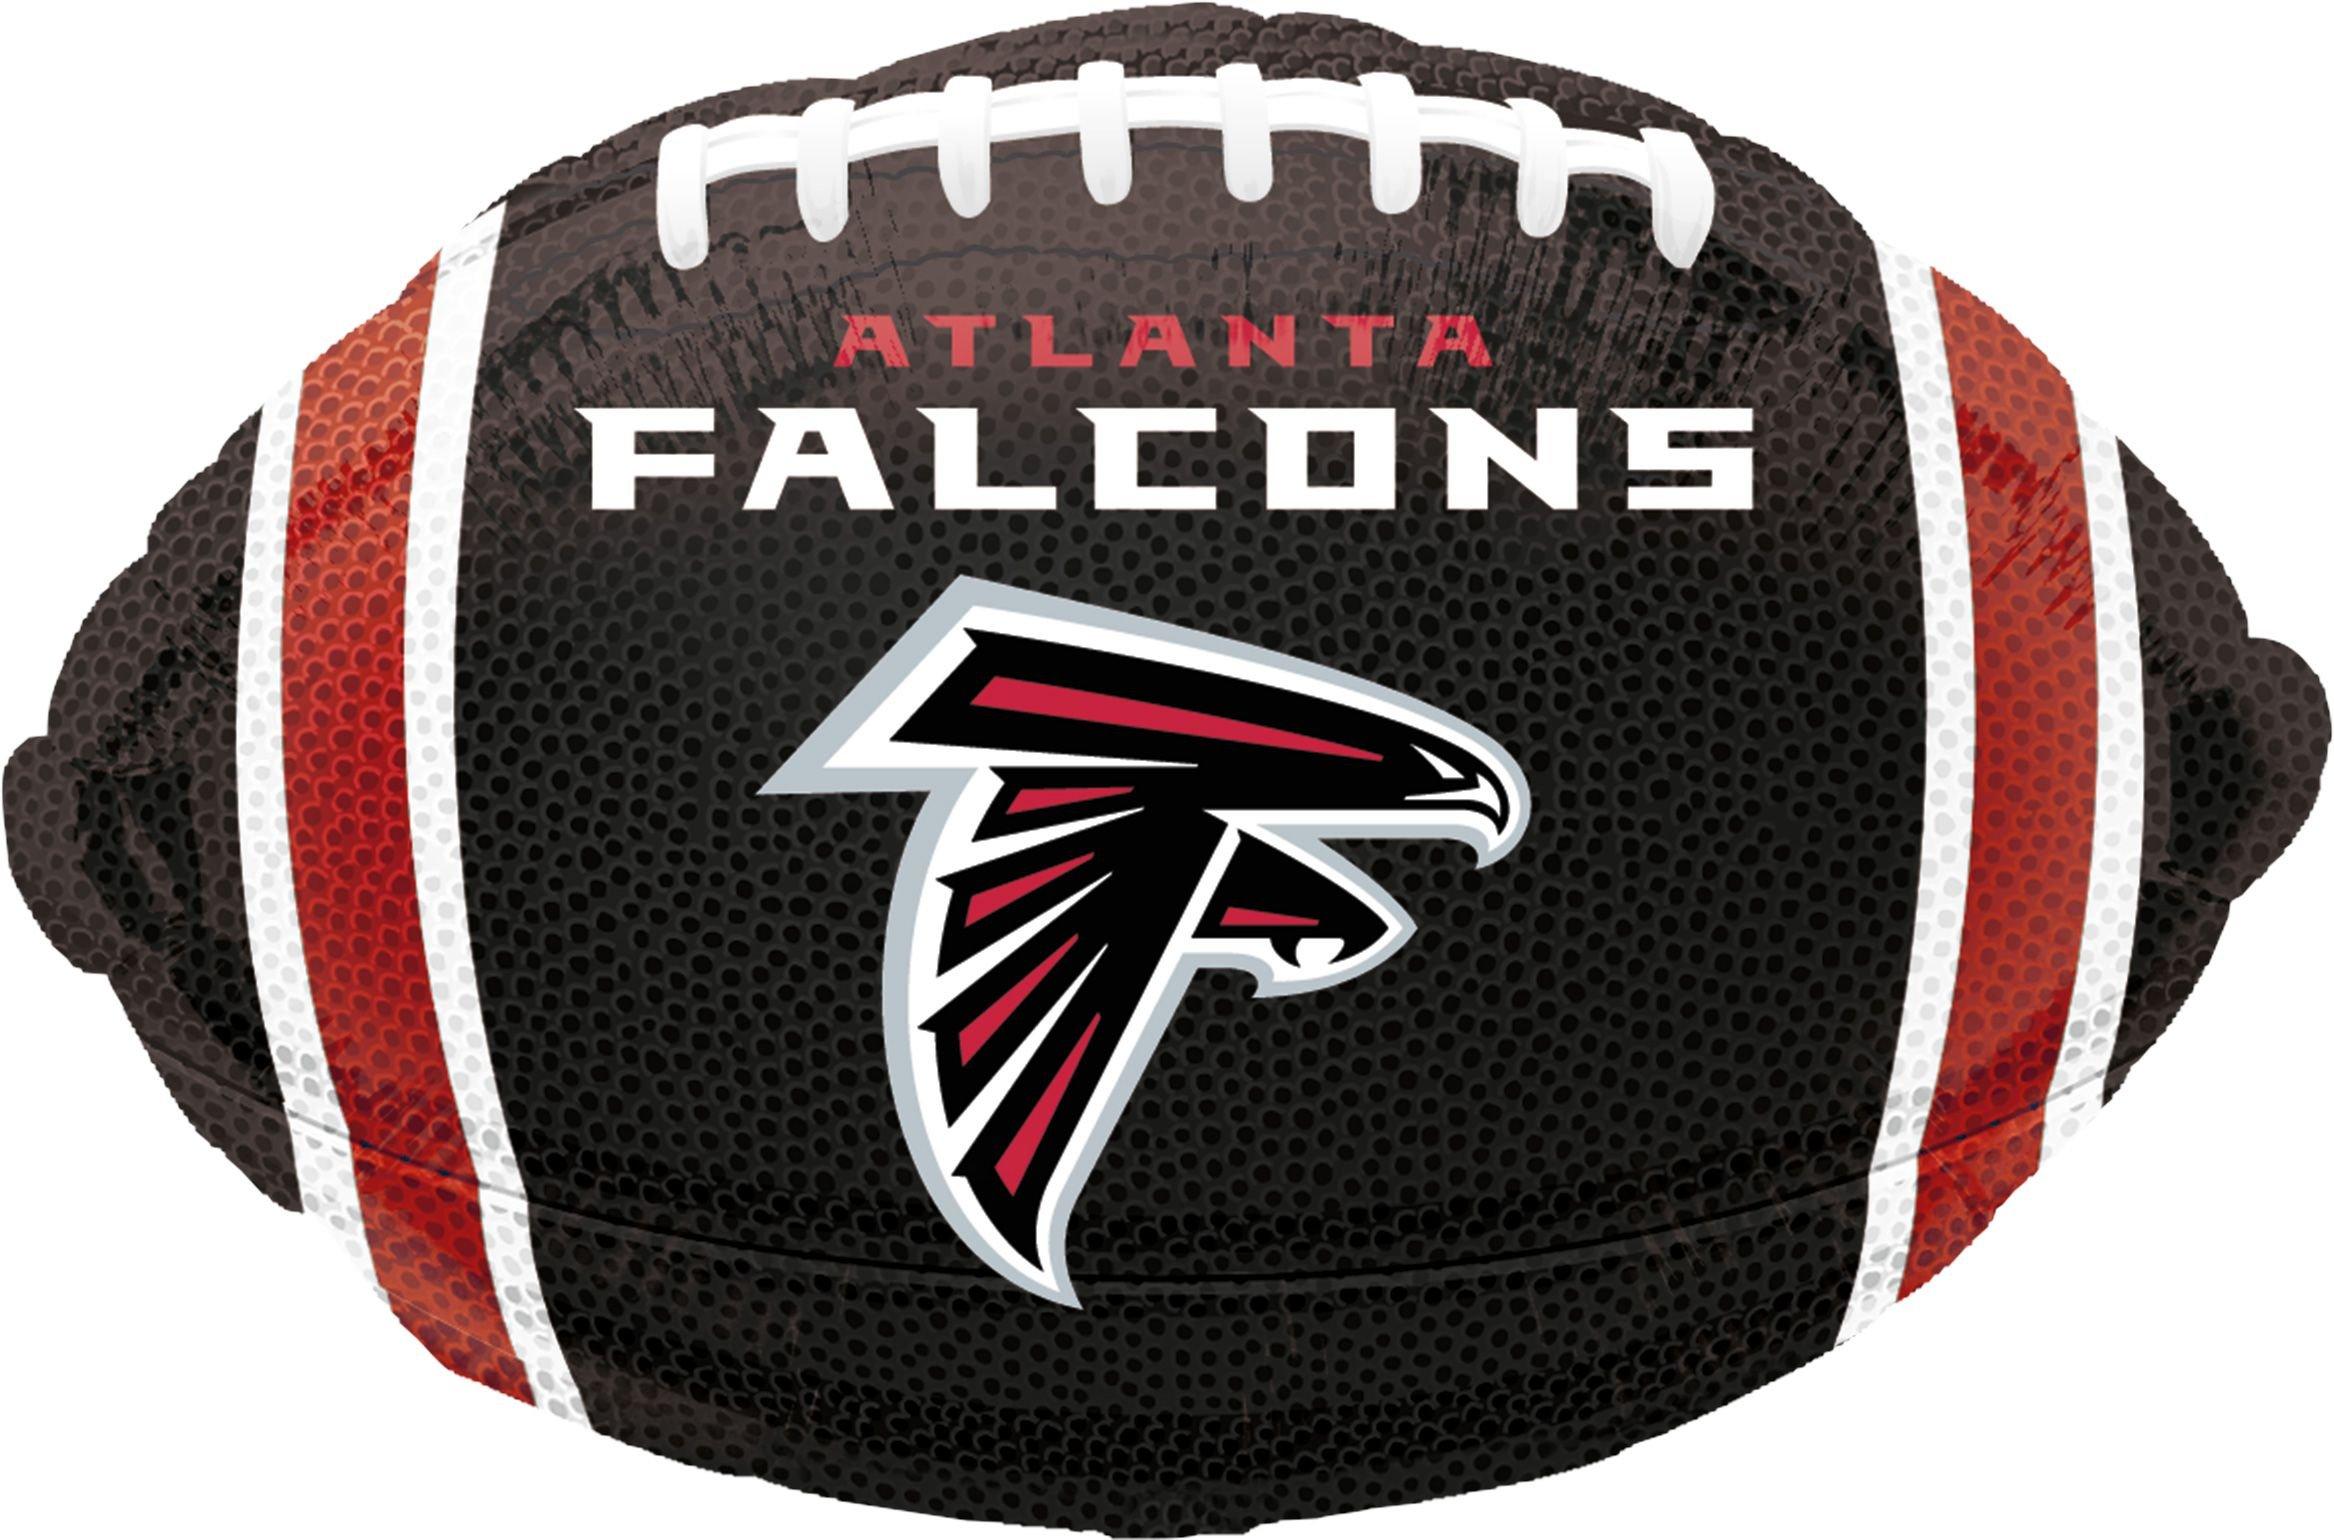 Atlanta Falcons - Atlanta Falcons